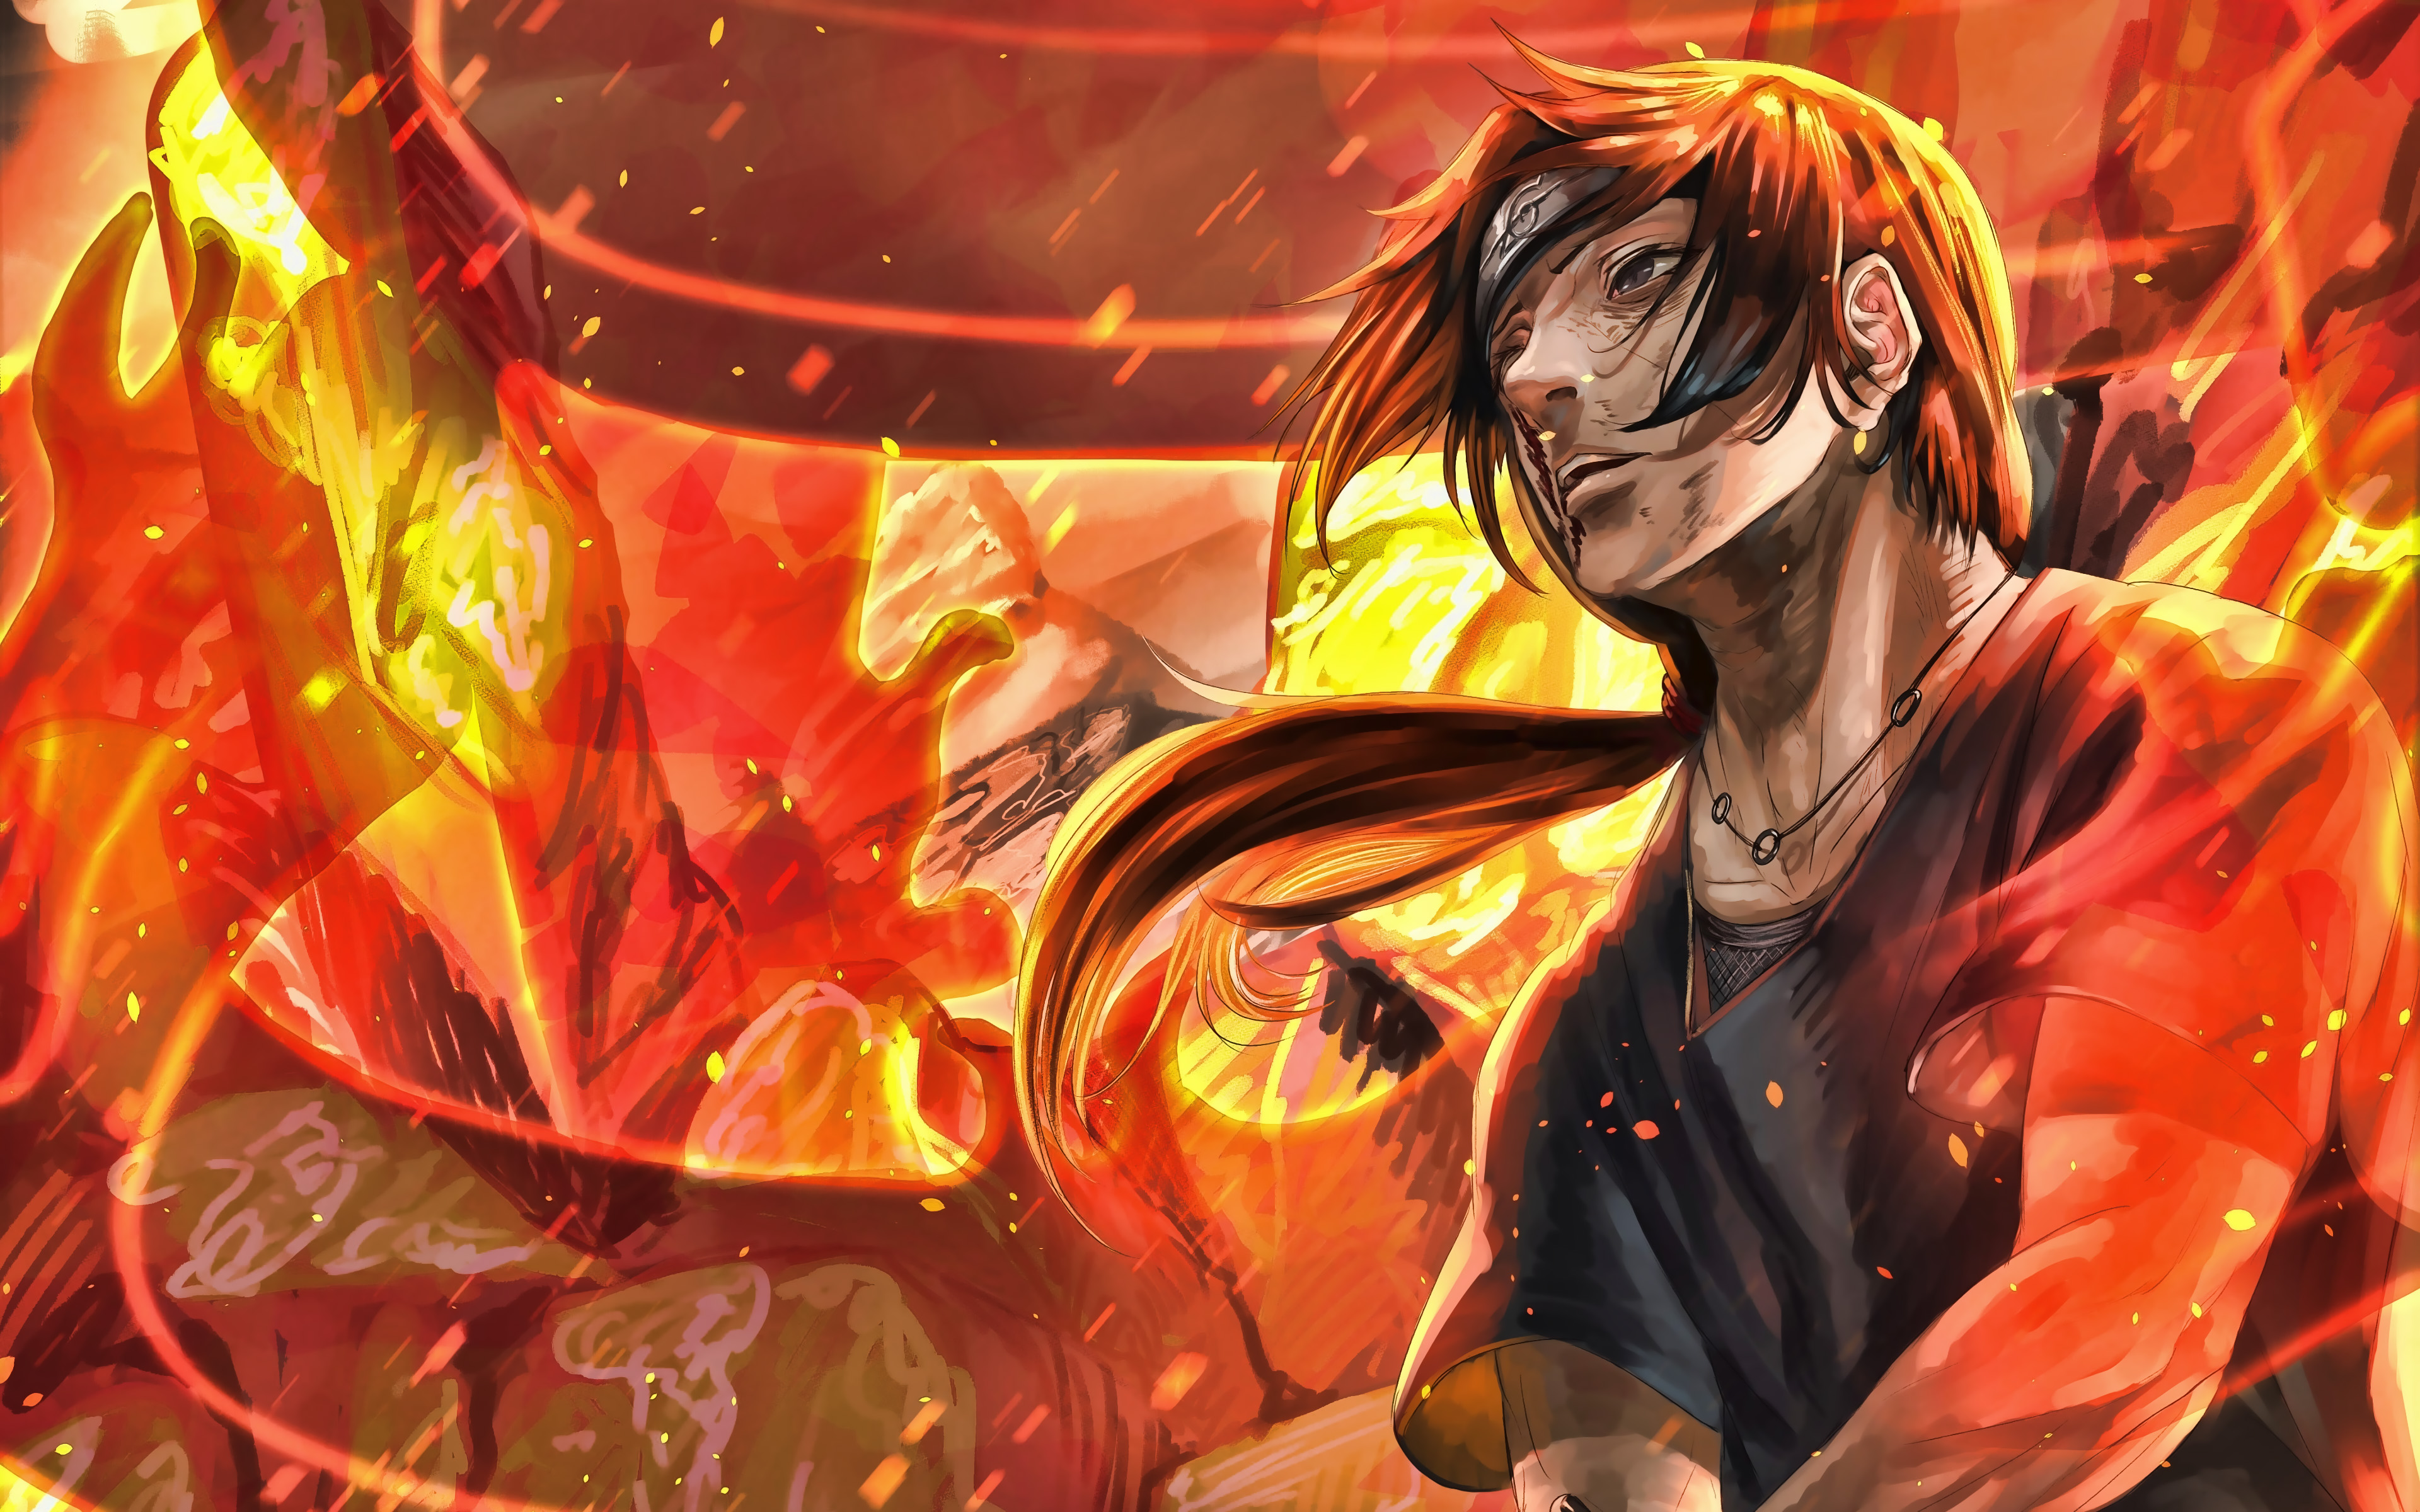 Download wallpaper Itachi Uchiha, 4k, Naruto, fire flames, Anbu